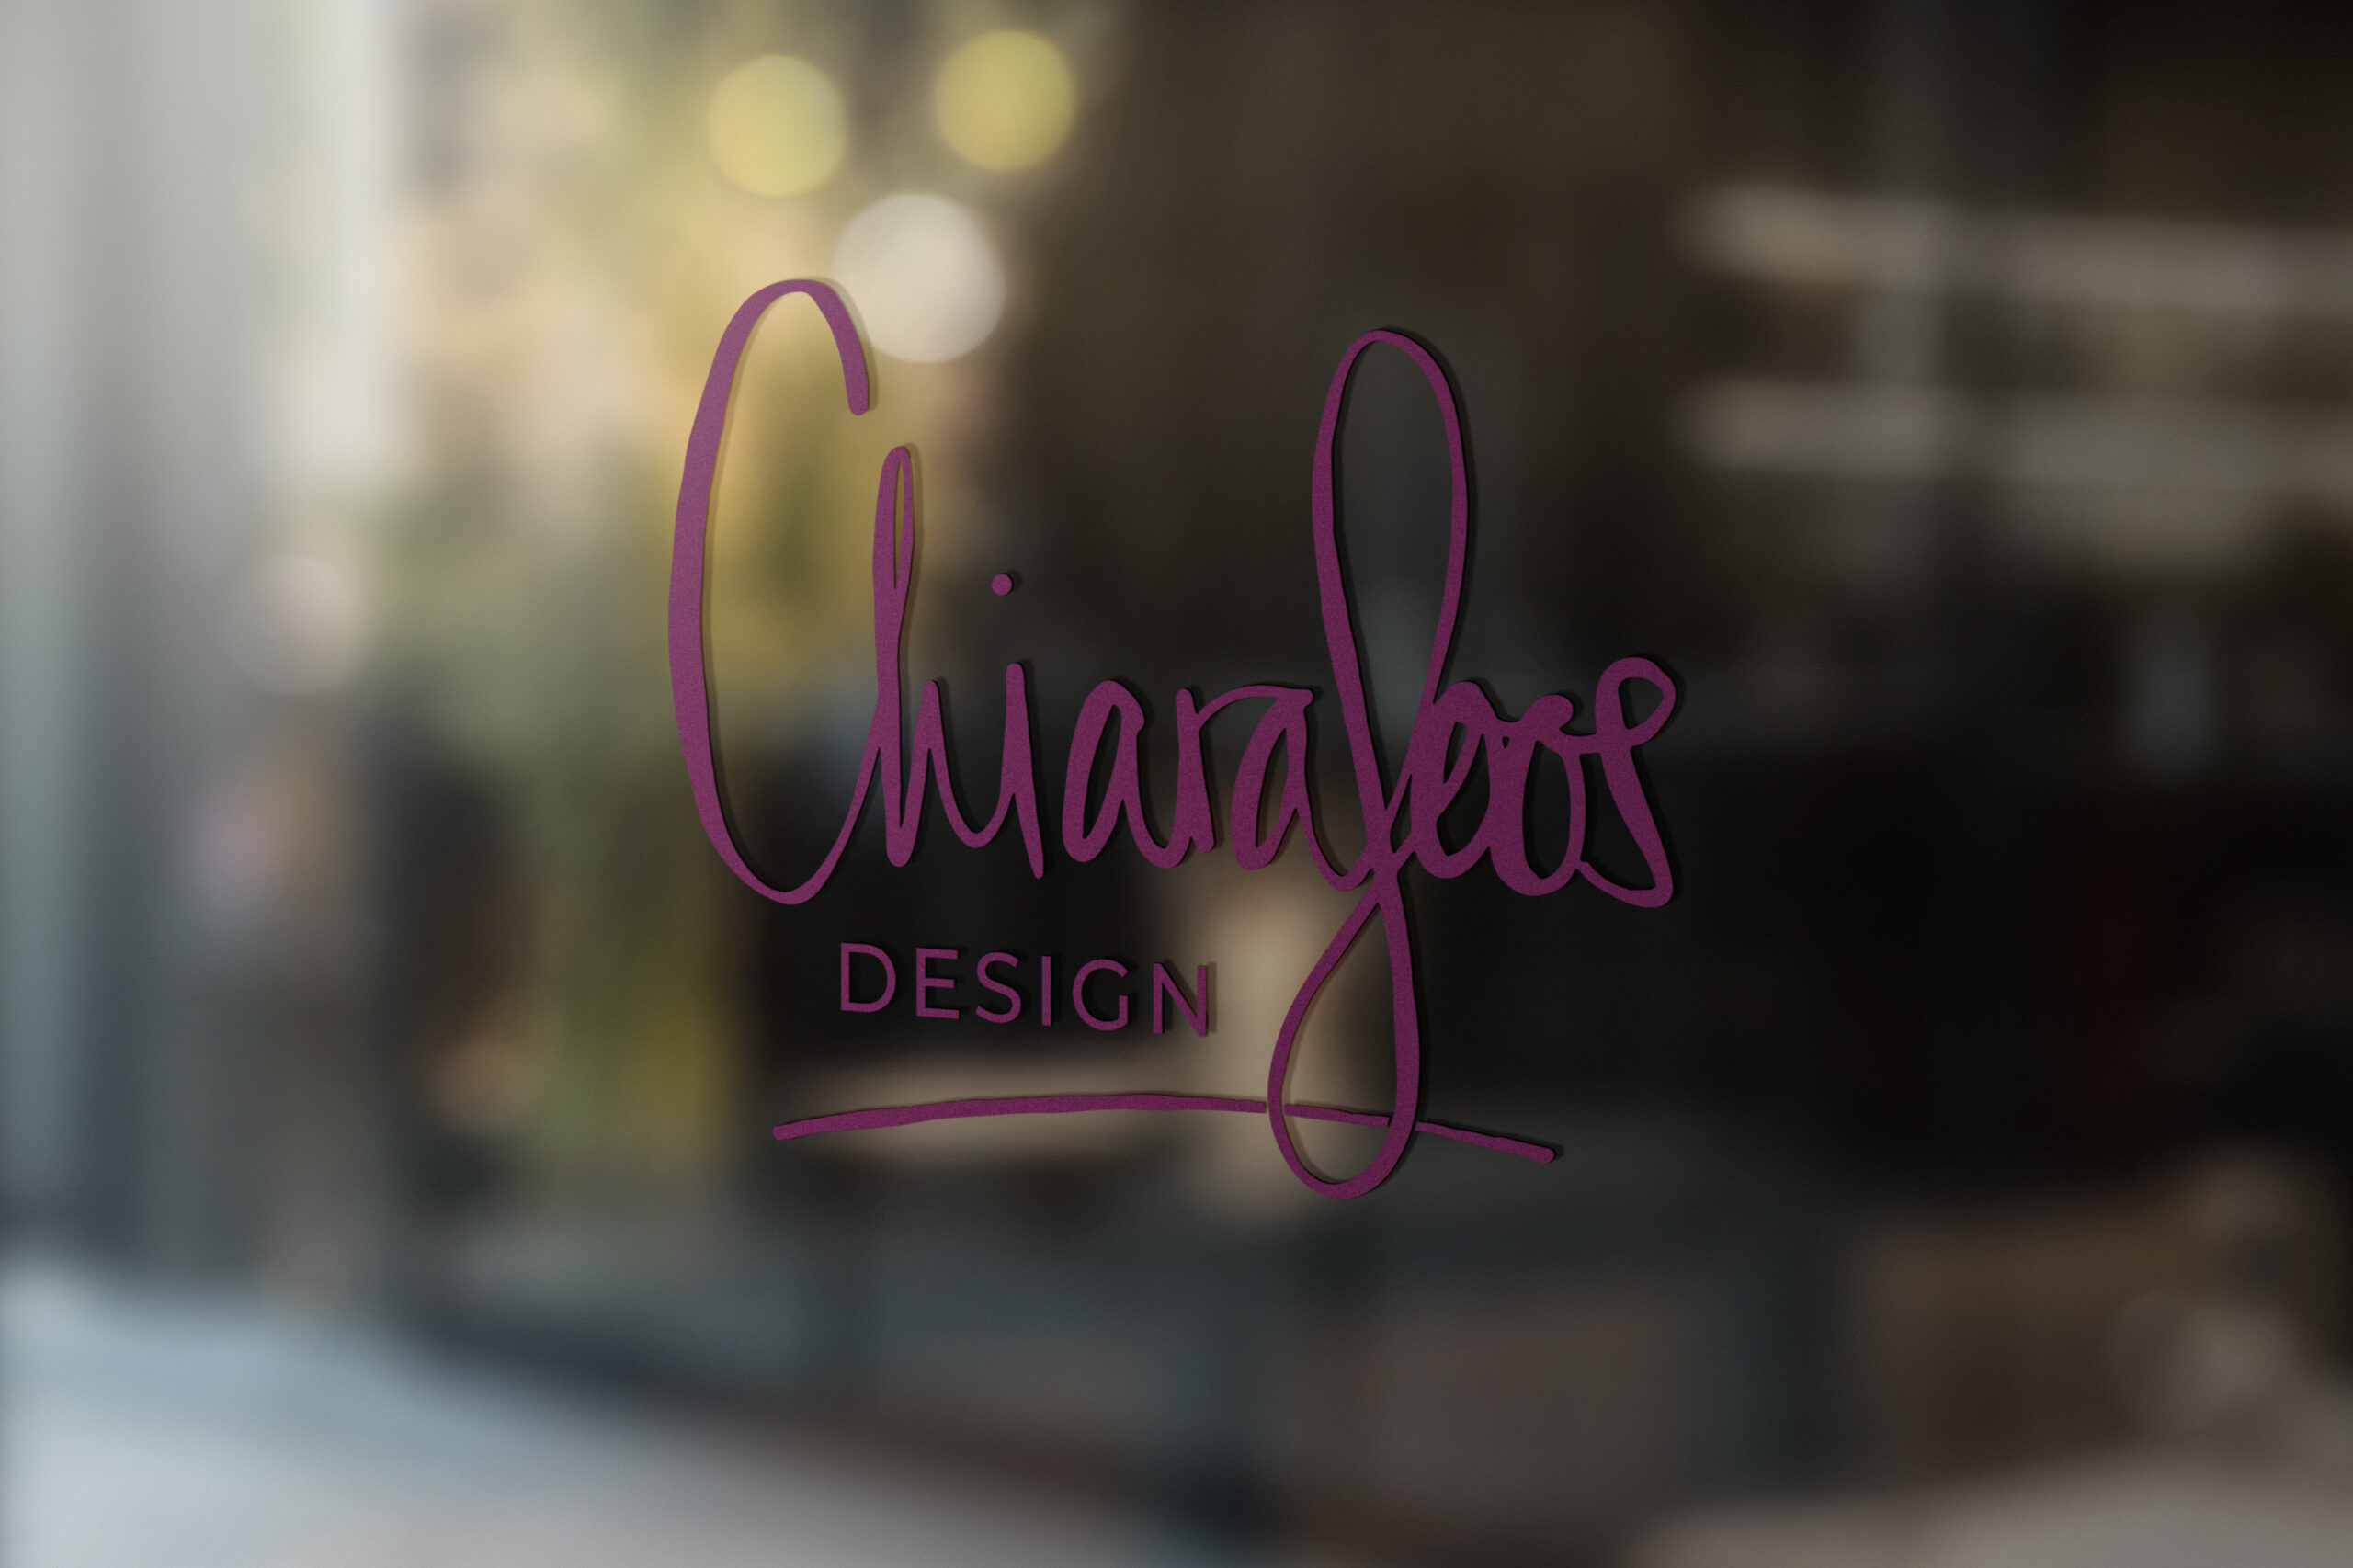 Eine Glastür mit dem Logo von Chiara Joos Design darauf.